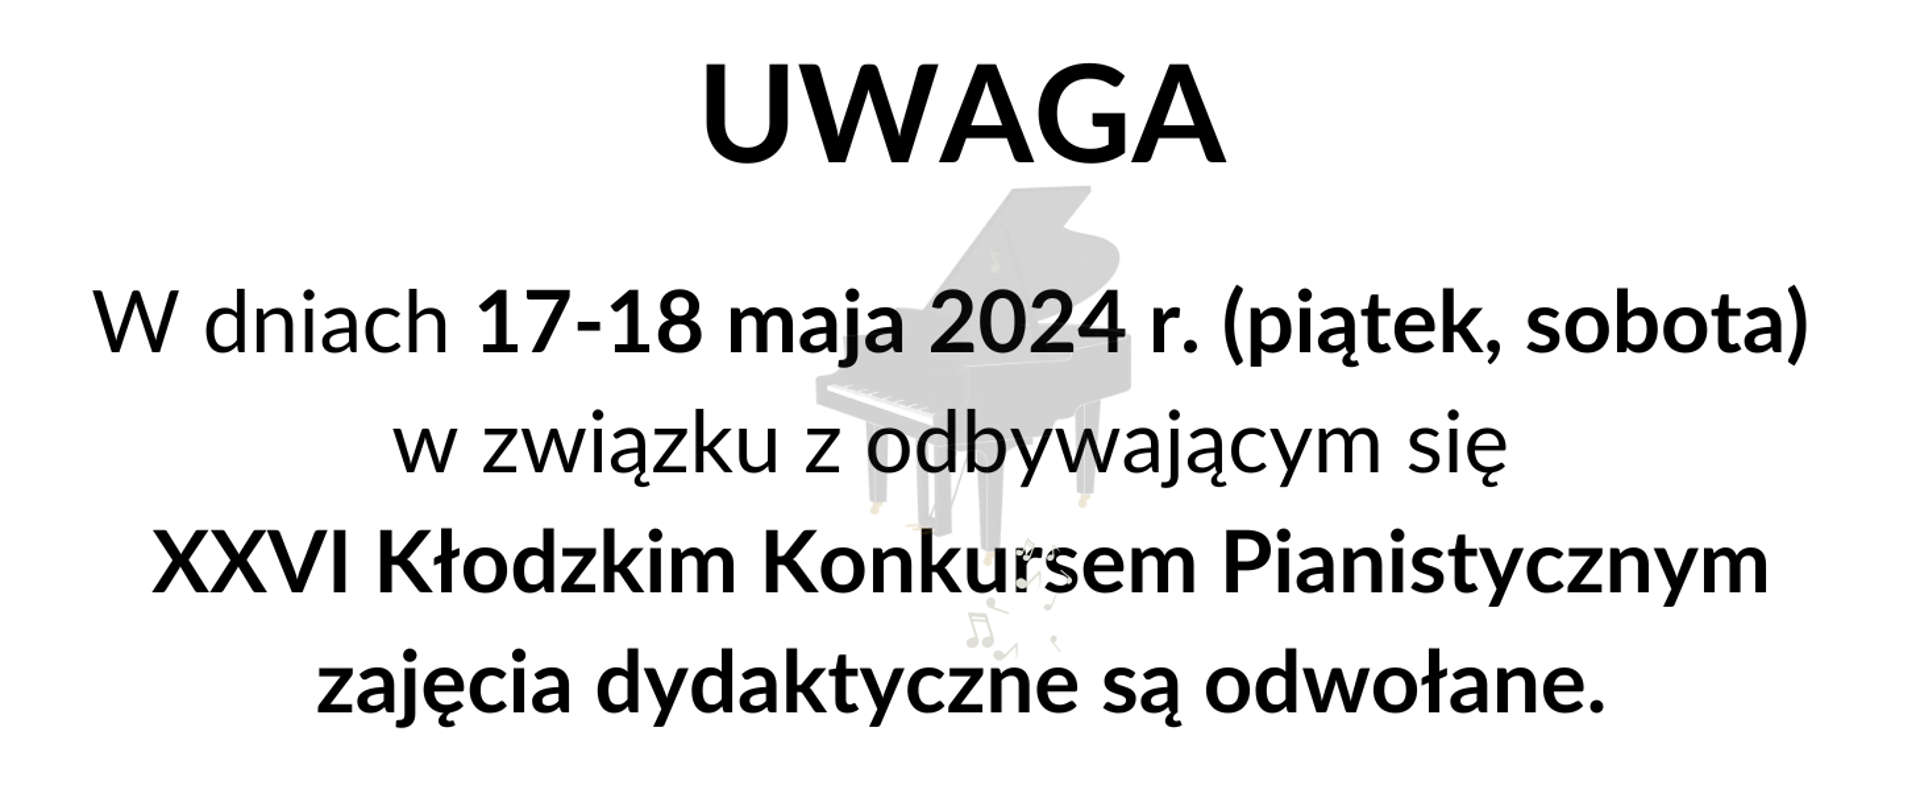 Informacja tekstowa na białym tle "W dniach 17-18 maja 2024 r. (piątek, sobota) w związku z odbywającym się XXVI Kłodzkim Konkursem Pianistycznym zajęcia dydaktyczne są odwołane."
